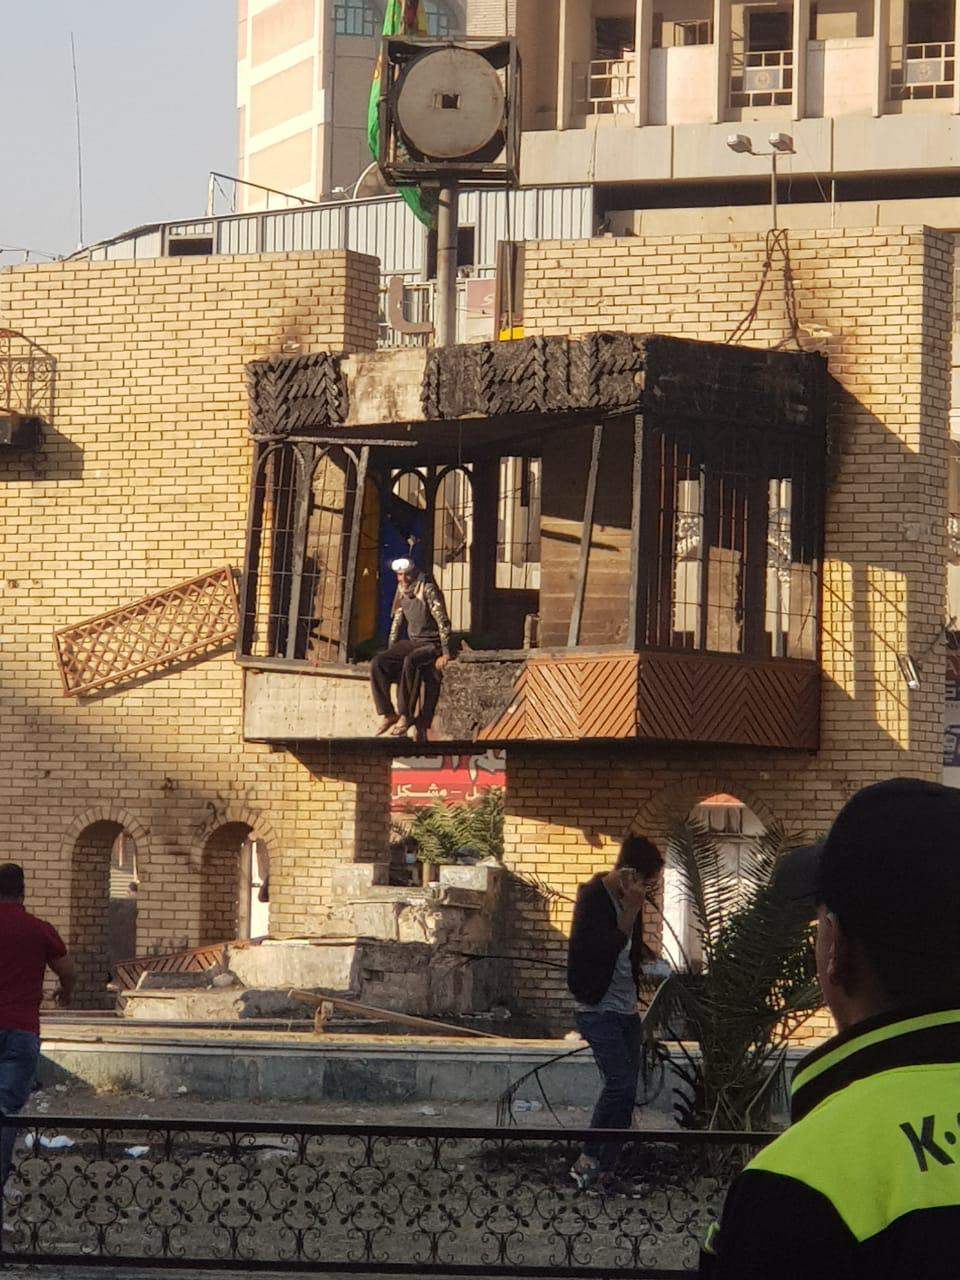 إانسحاب الفرقة التاسعة من الجيش العراقي نحو السفارة الايرانية في كرادة مريم لحمايتها الآن